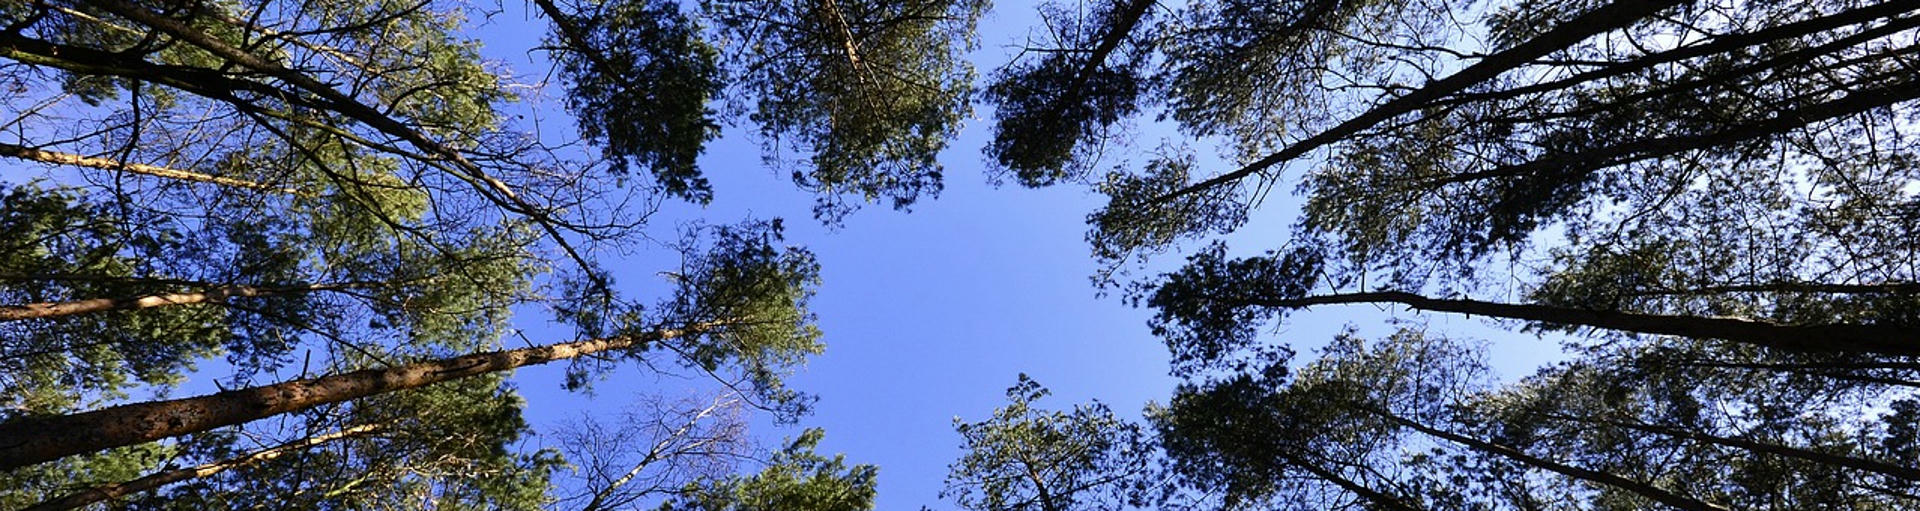 CamperOase finanziert zwei Bäume für jede Bewertung